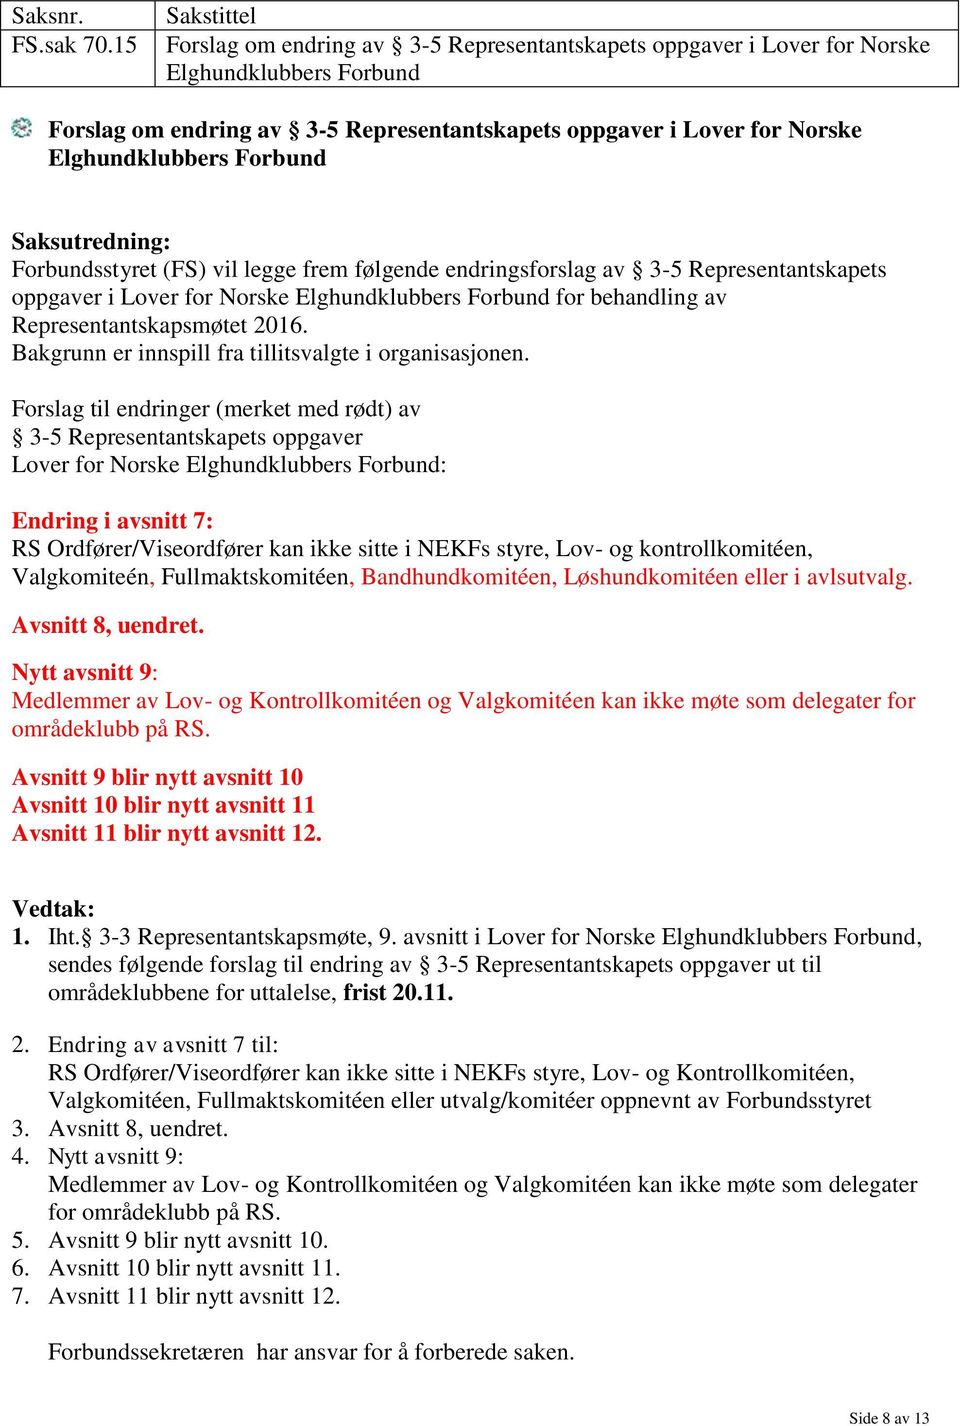 Forbundsstyret (FS) vil legge frem følgende endringsforslag av 3-5 Representantskapets oppgaver i Lover for Norske Elghundklubbers Forbund for behandling av Representantskapsmøtet 2016.